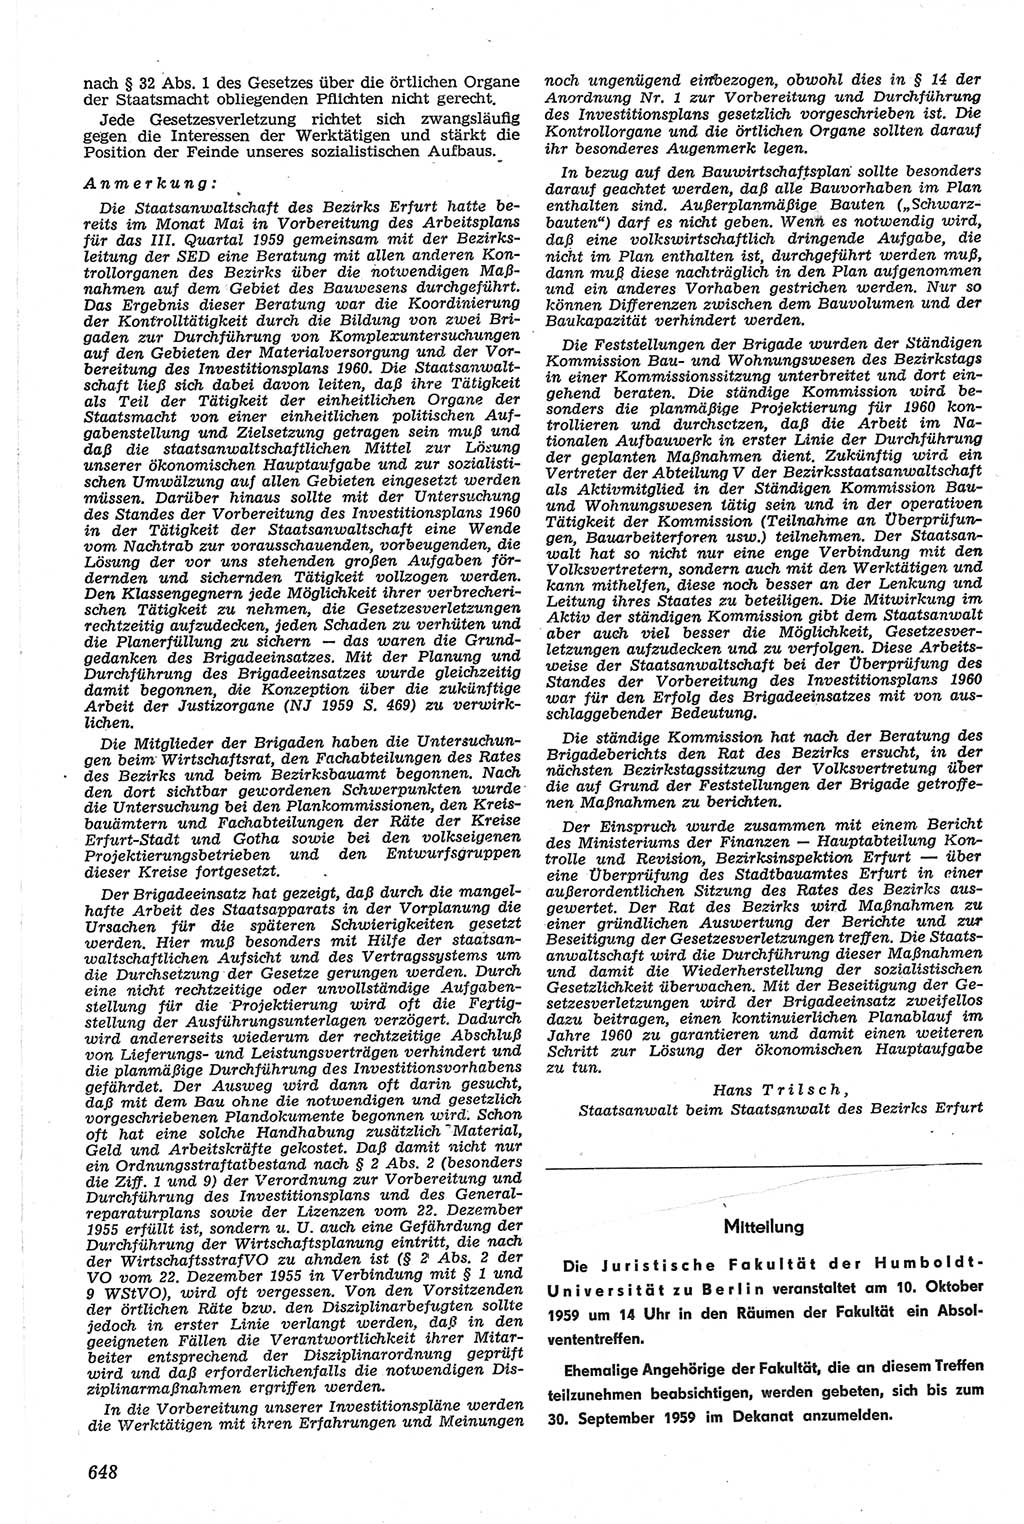 Neue Justiz (NJ), Zeitschrift für Recht und Rechtswissenschaft [Deutsche Demokratische Republik (DDR)], 13. Jahrgang 1959, Seite 648 (NJ DDR 1959, S. 648)